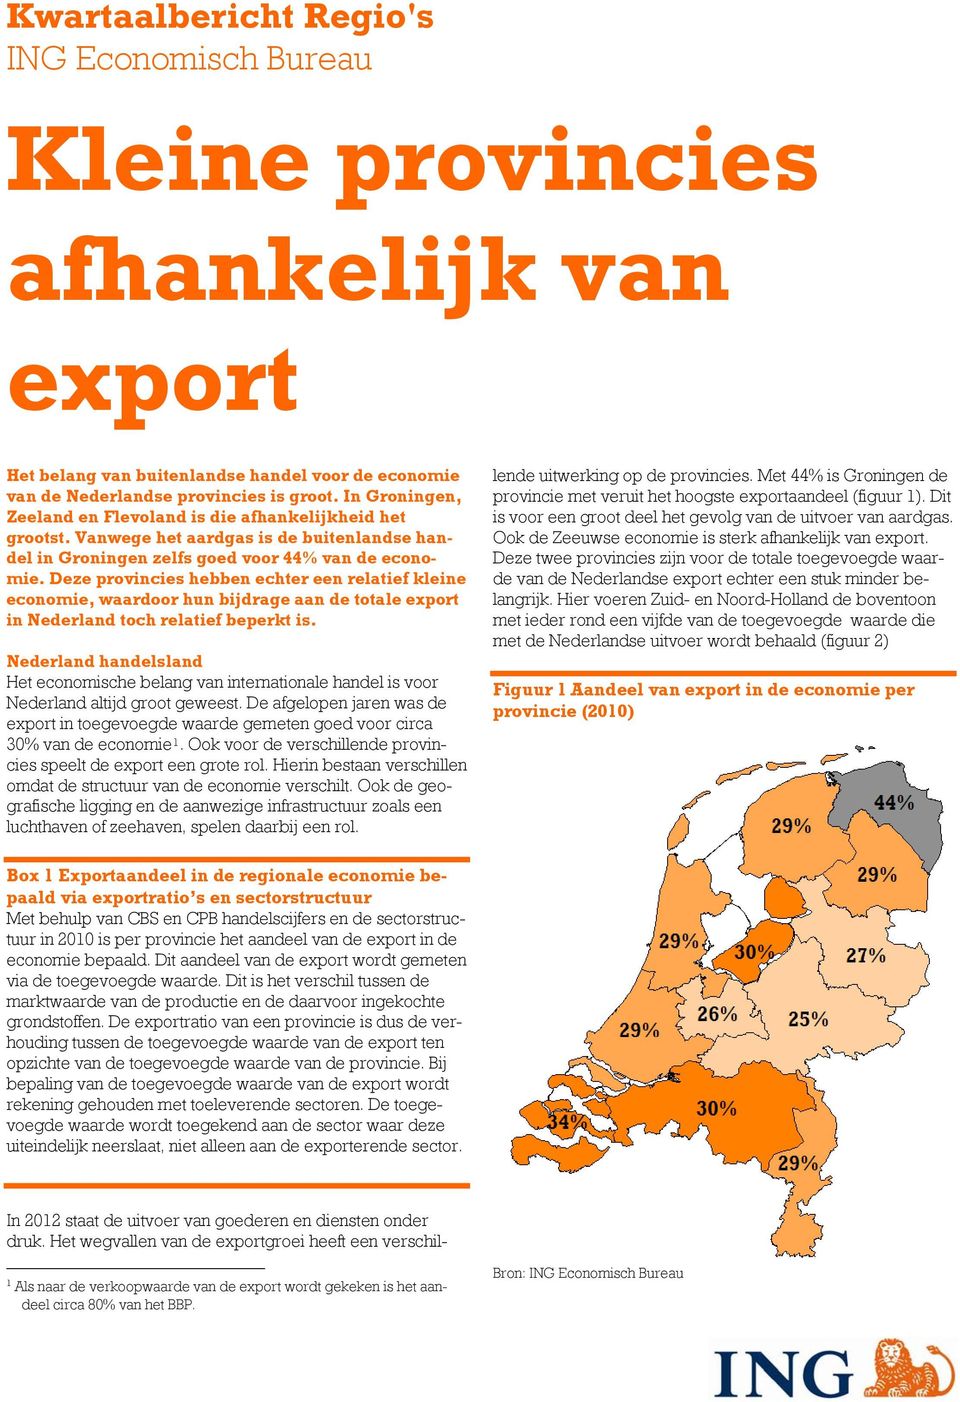 Deze provincies hebben echter een relatief kleine economie, waardoor hun bijdrage aan de totale export in Nederland toch relatief beperkt is.